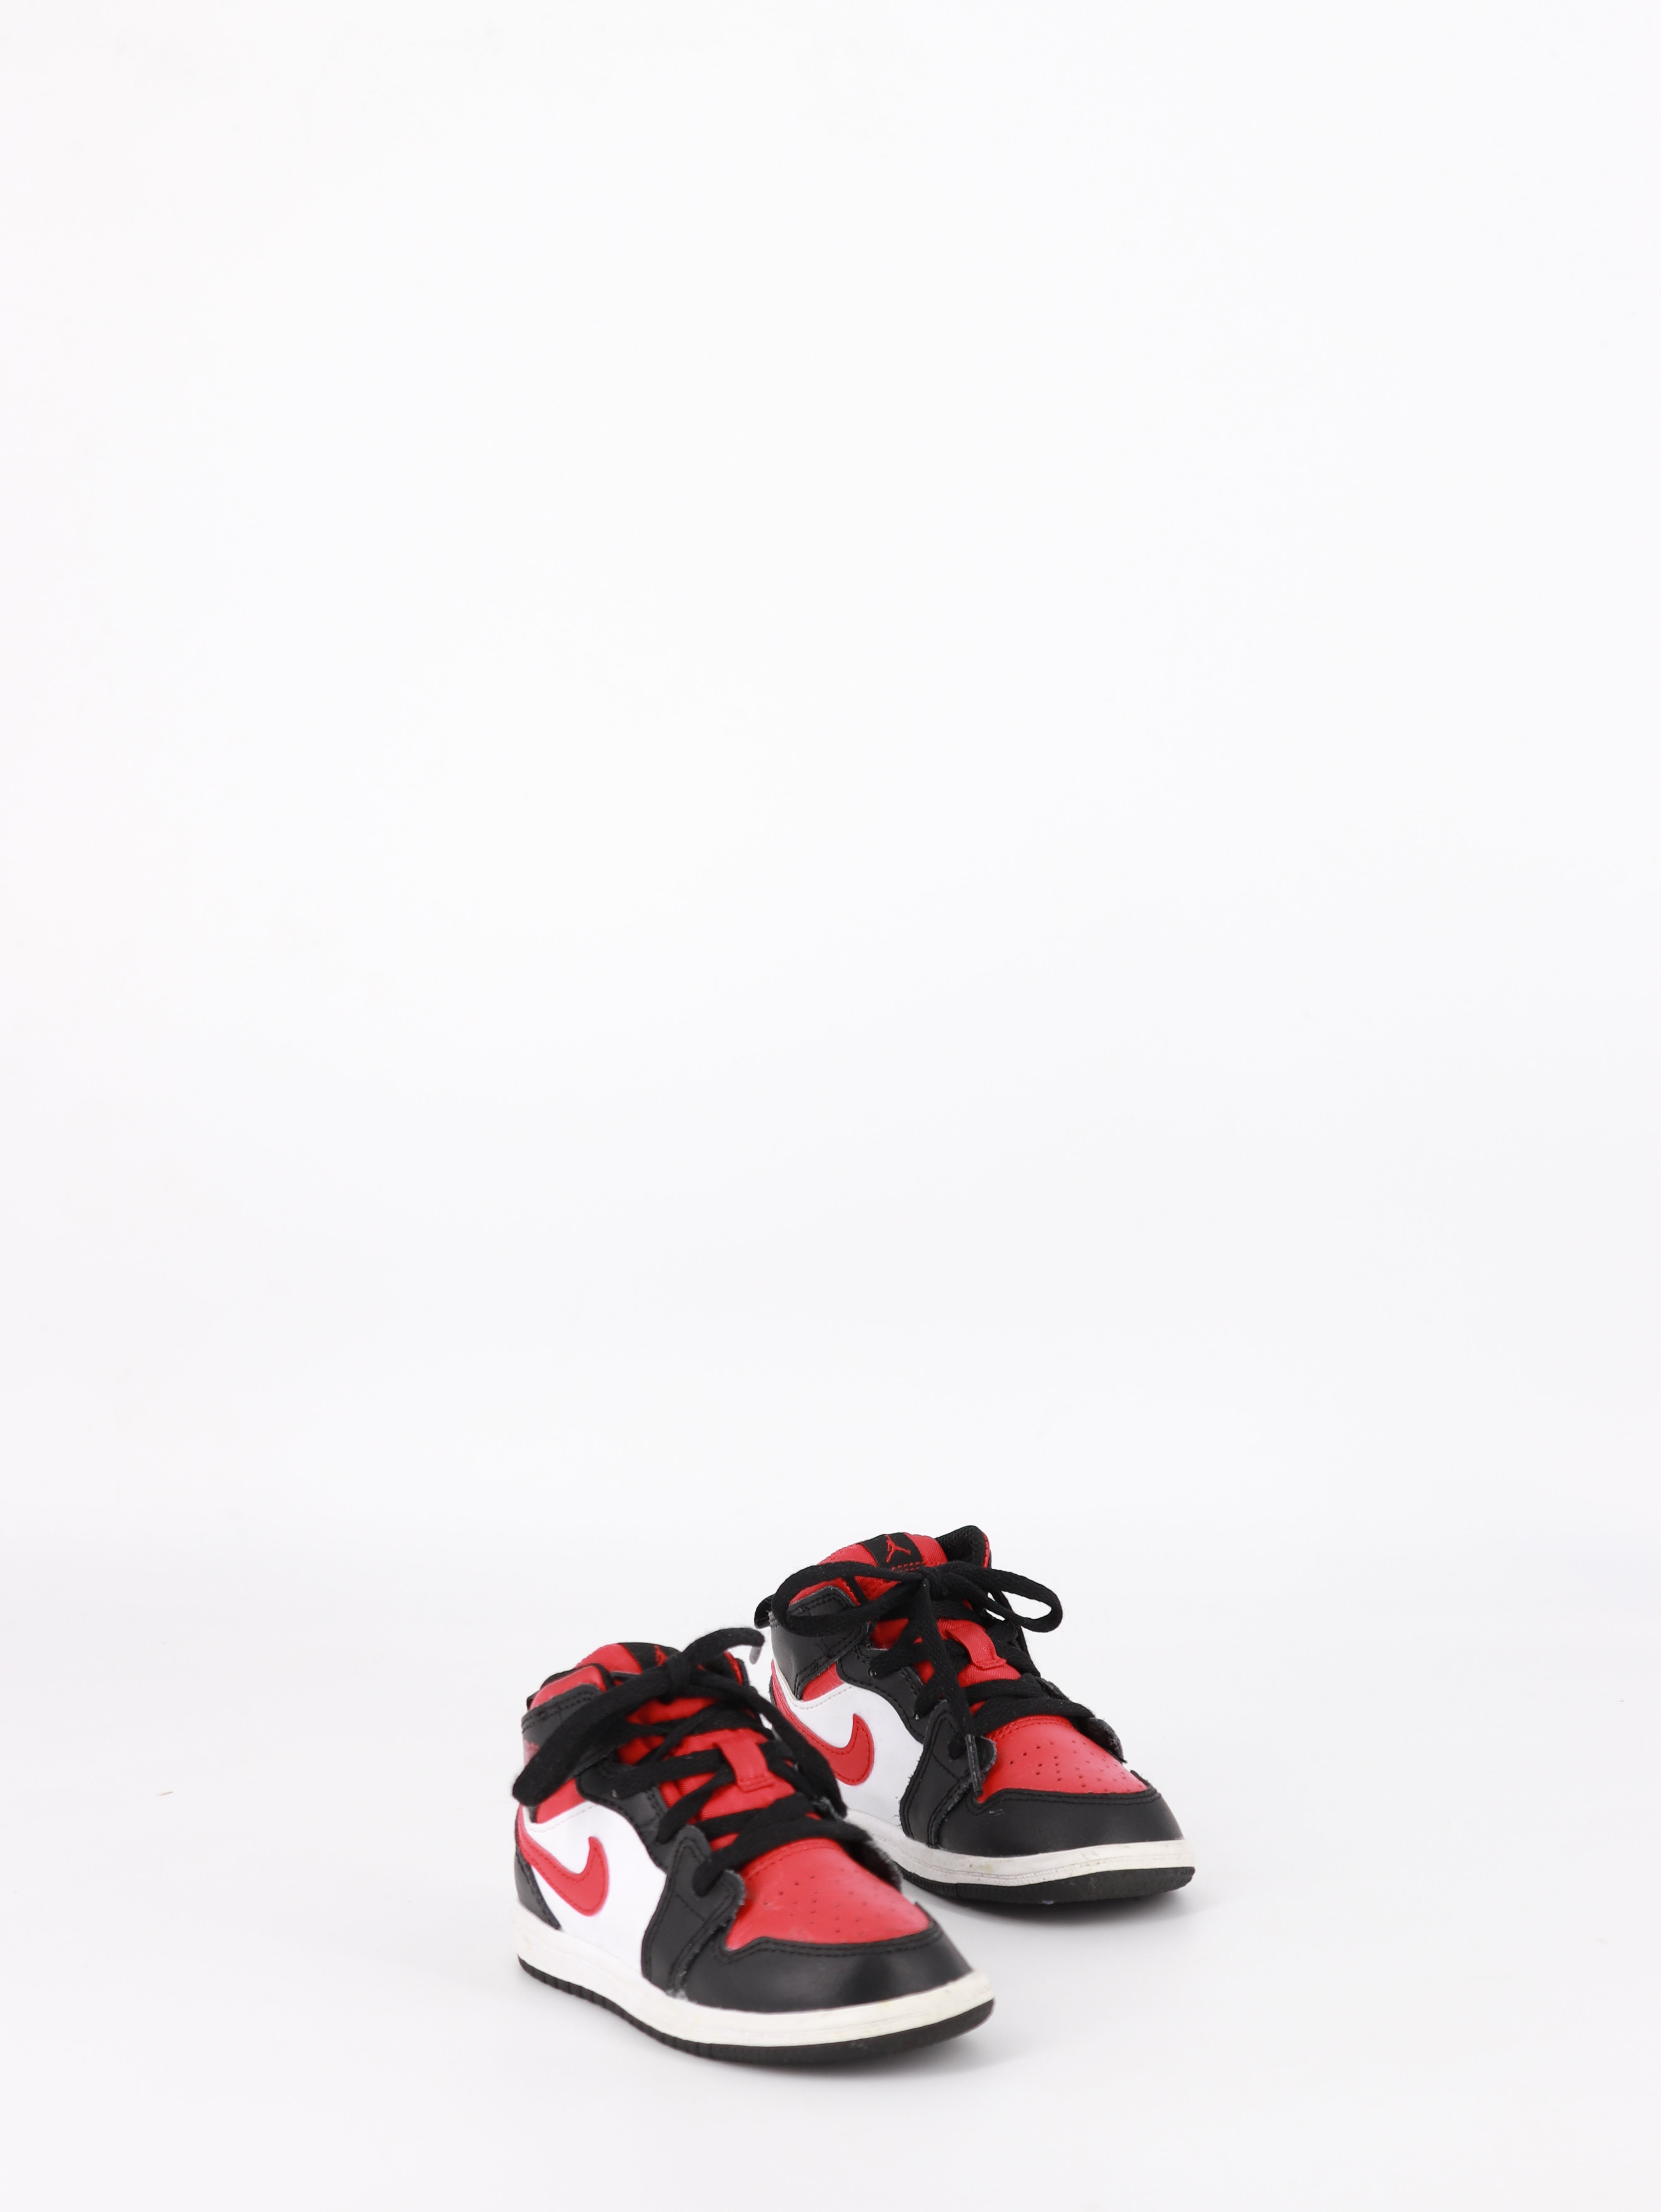 Nike Tenis Air Jordan Color Block - Unisex - US 8C